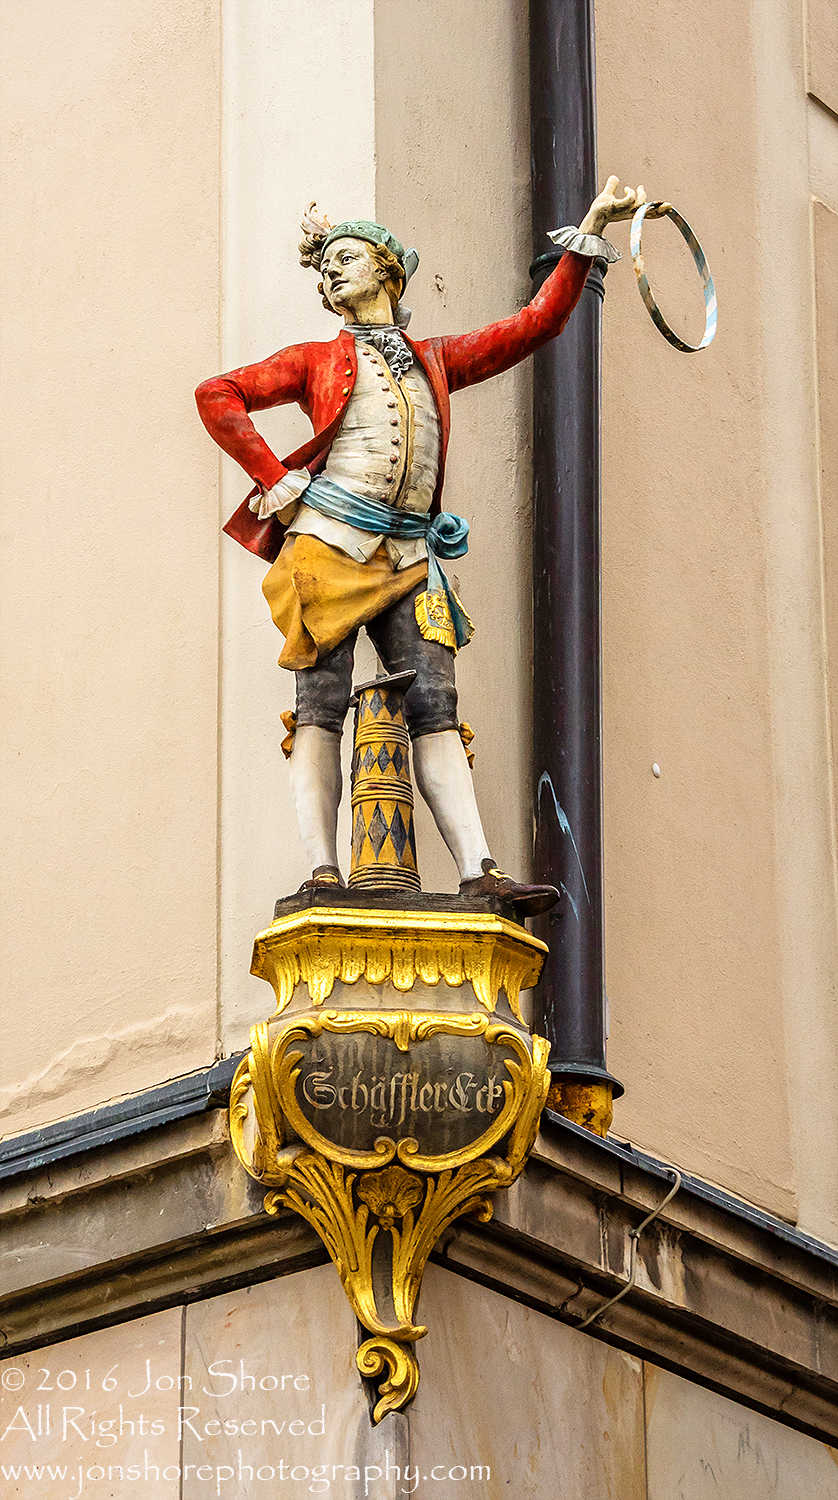 Corner Statue, Munich, Germany. Nikkor 200mm